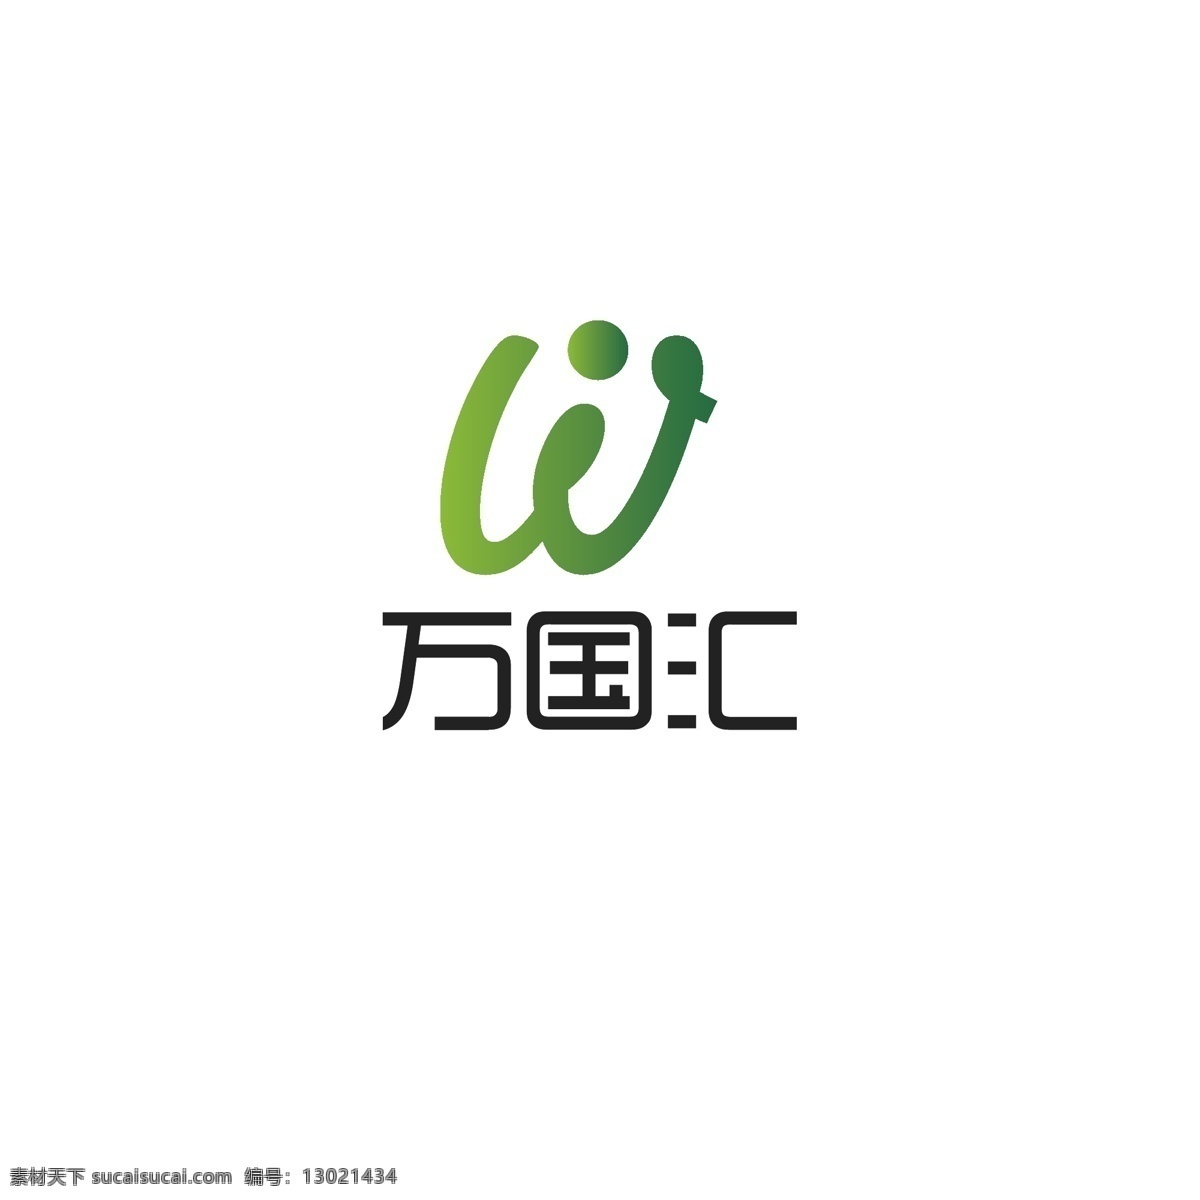 农业 产品 logo 绿色 健康 简约 人物 动感 字母w 发展